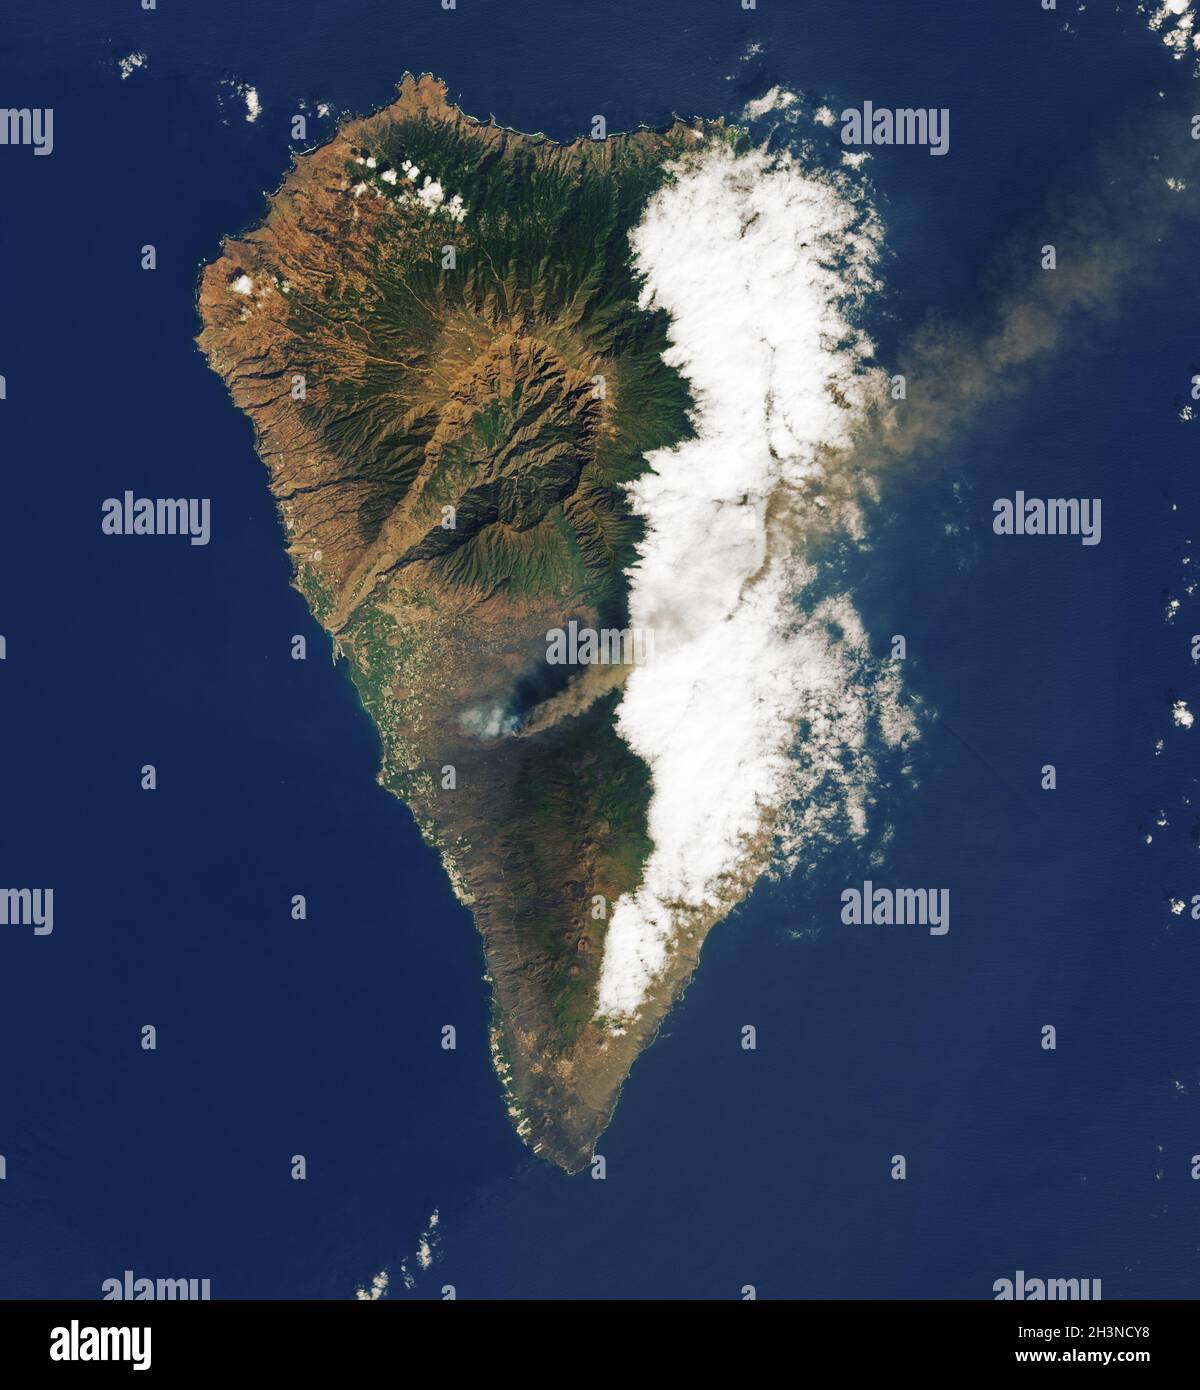 LA PALMA, Isole CANARIE - 26 settembre 2021 - l'operational Land Imager (oli) su Landsat 8 ha catturato un'immagine di colore naturale (sopra) di lava fluente t Foto Stock